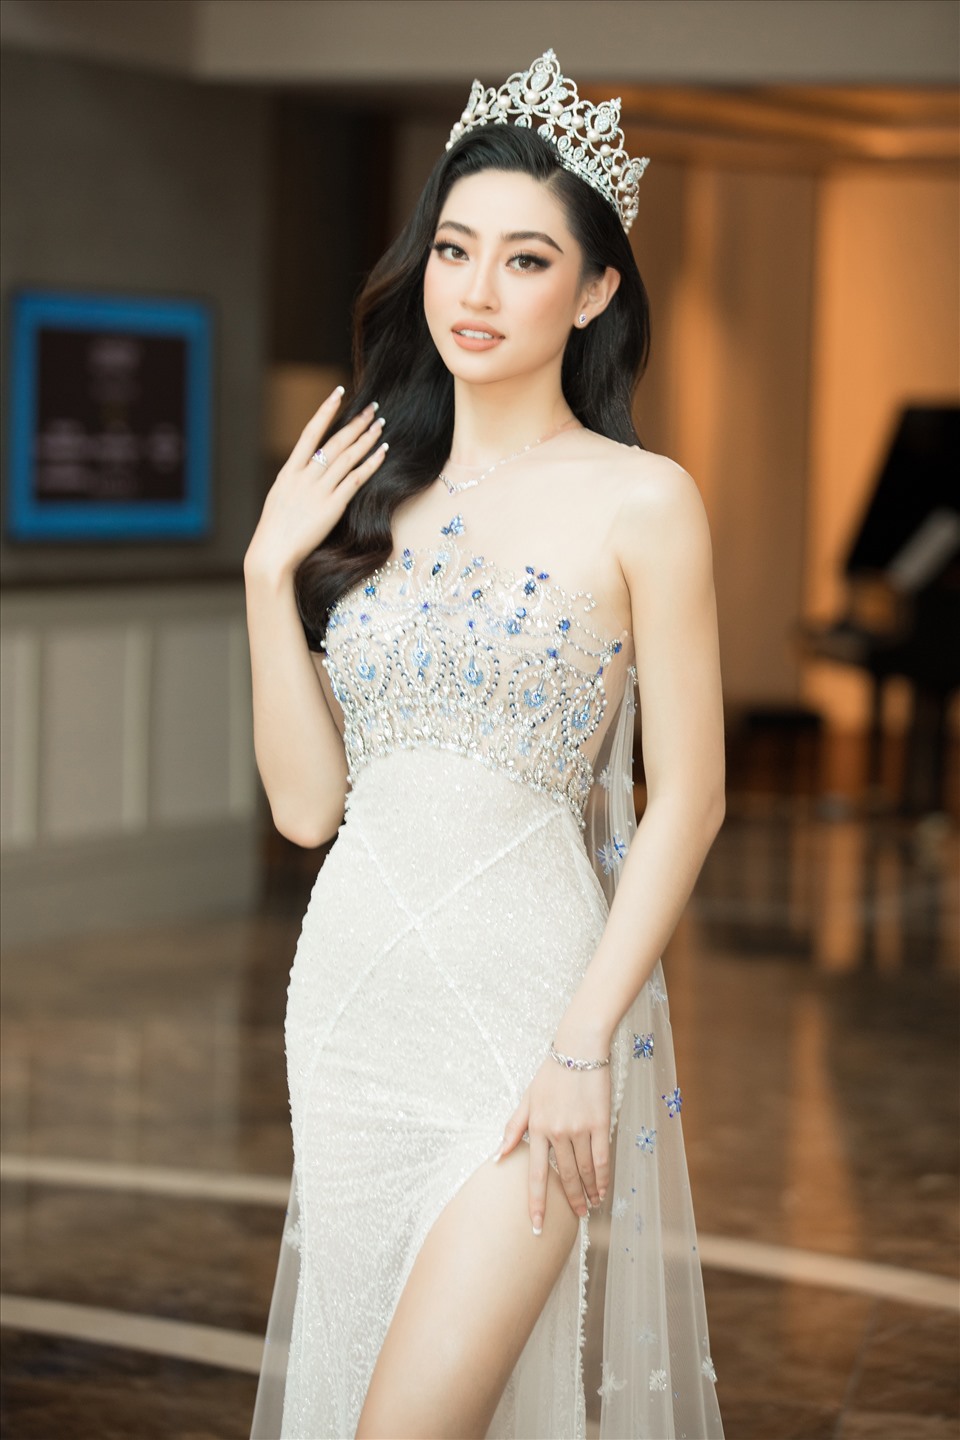 'Hoa hậu tri thức' Lương Thùy Linh xứng đáng là cái tên đại diện cho nhan sắc và tri thức thế hệ mới.